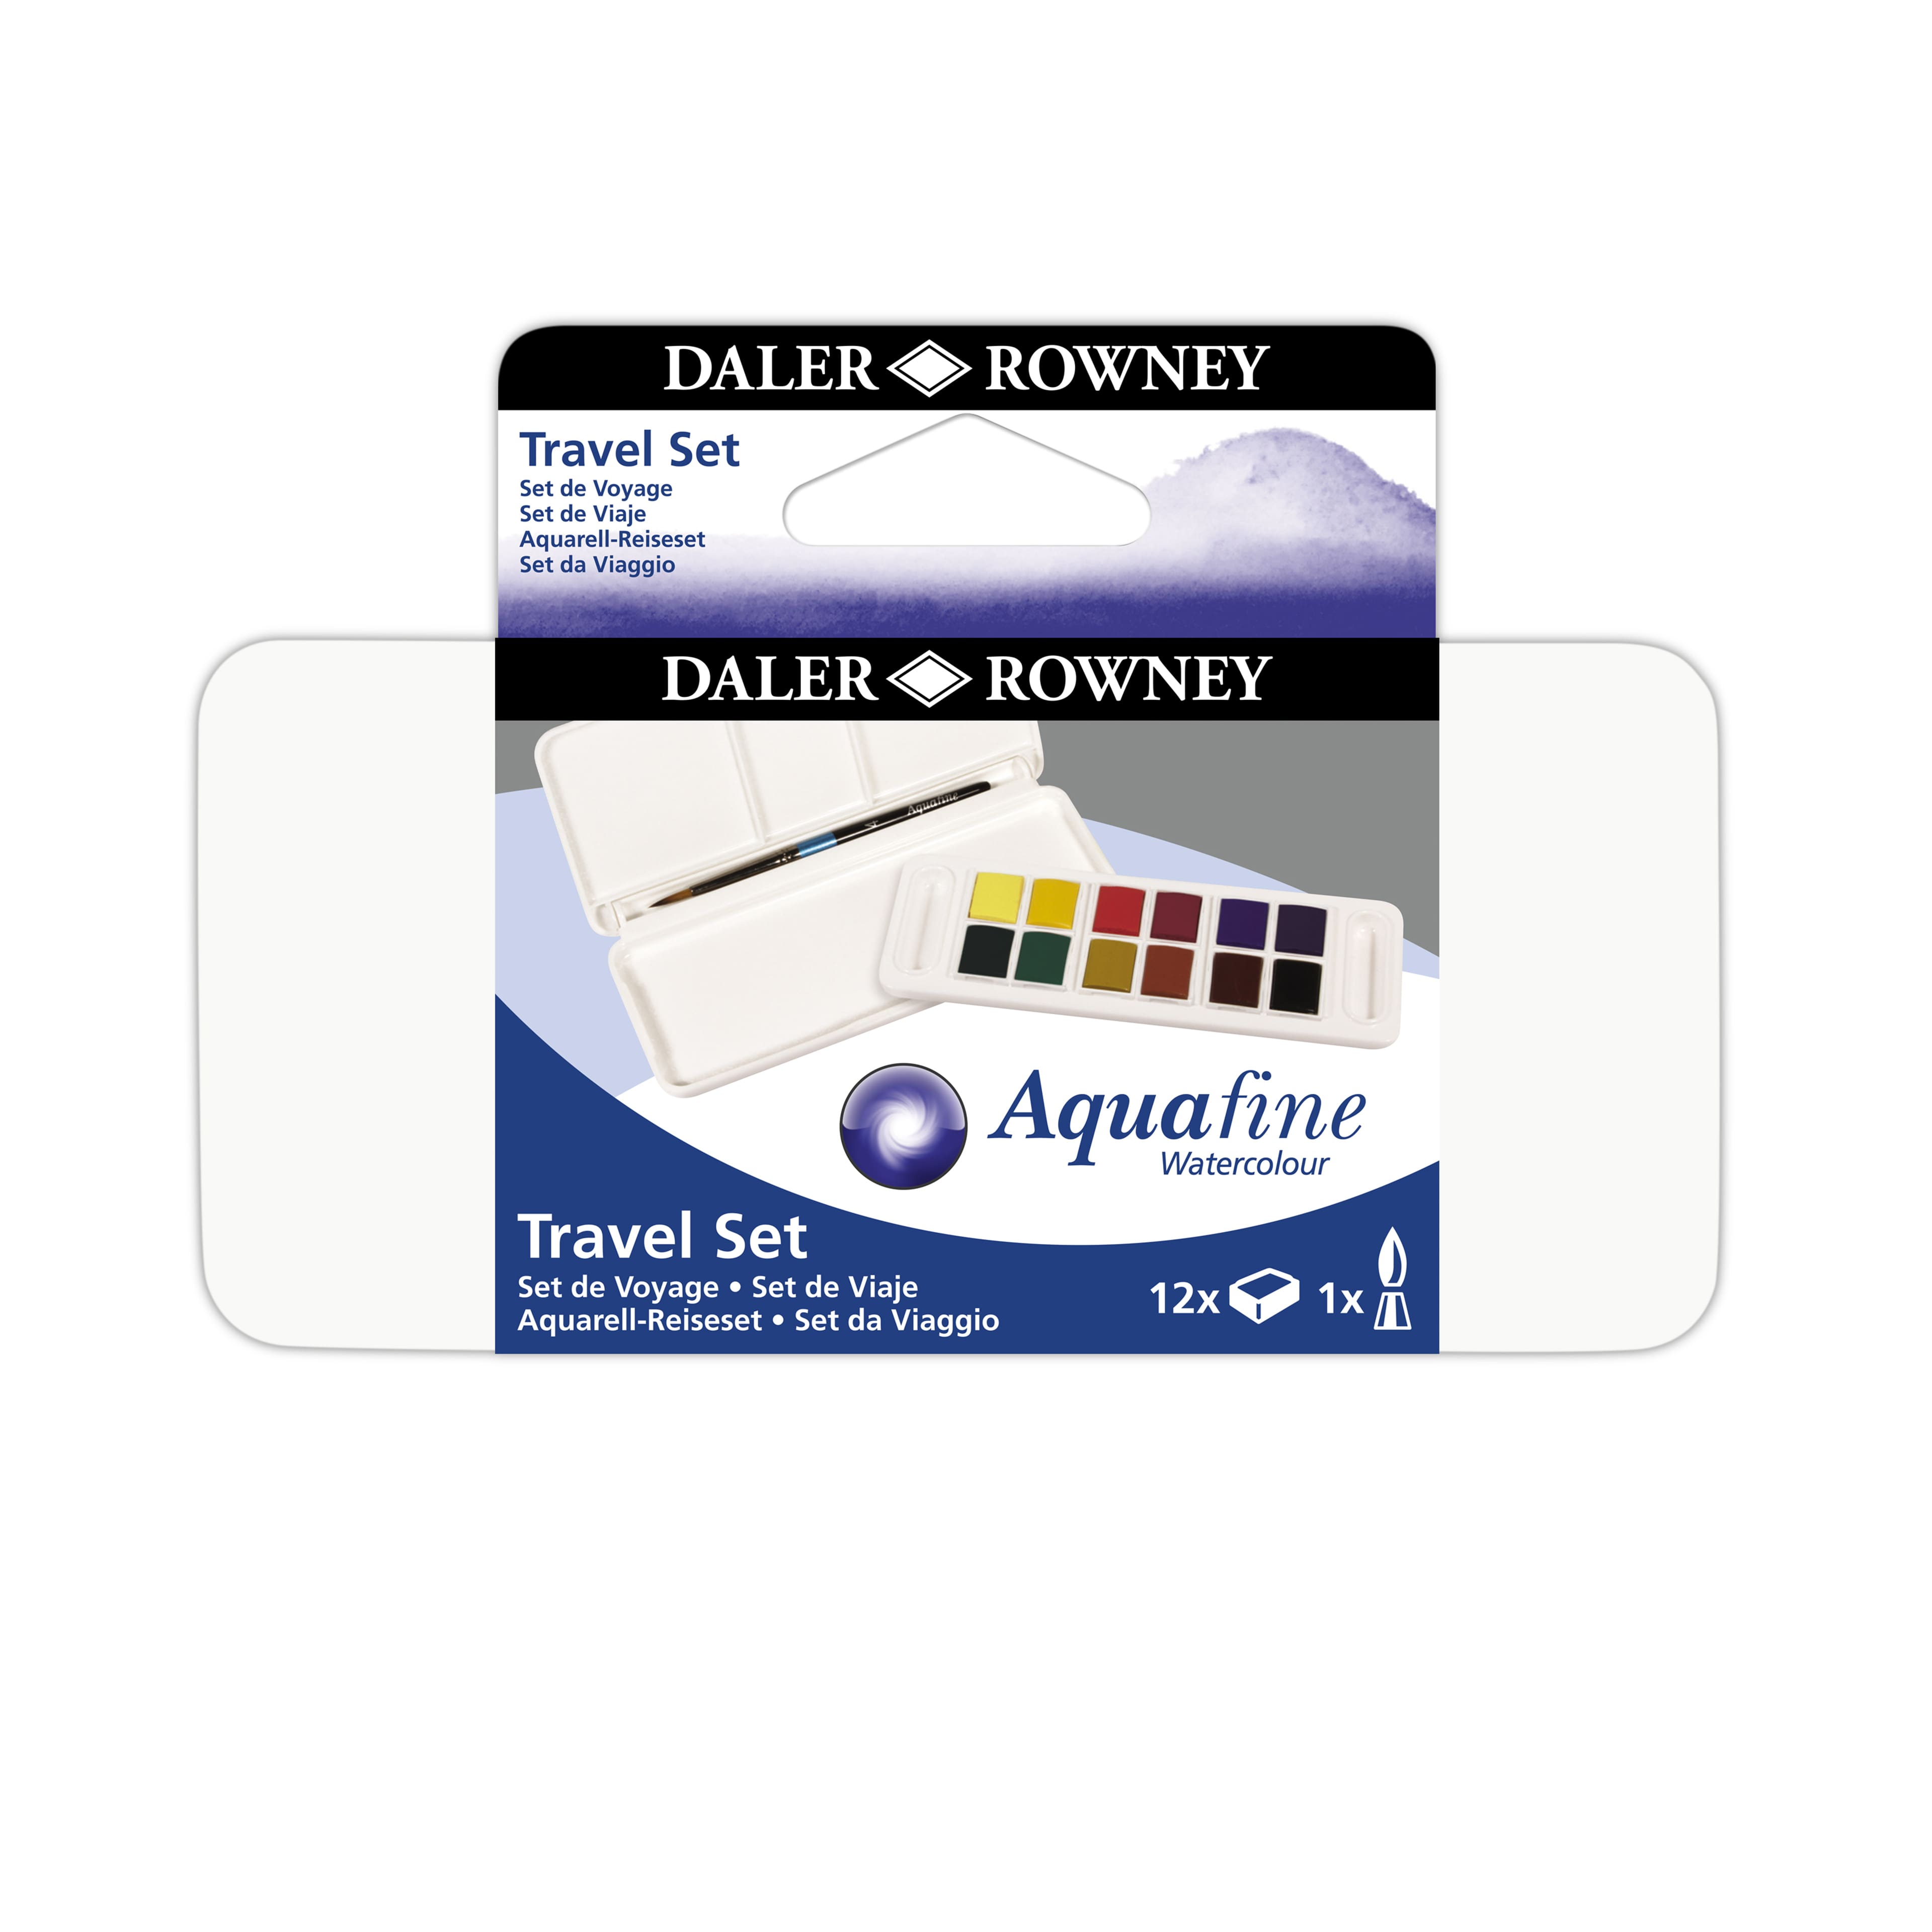 6 Pack: Daler-Rowney&#xAE; Aquafine 12 Color Watercolor Paint Travel Set